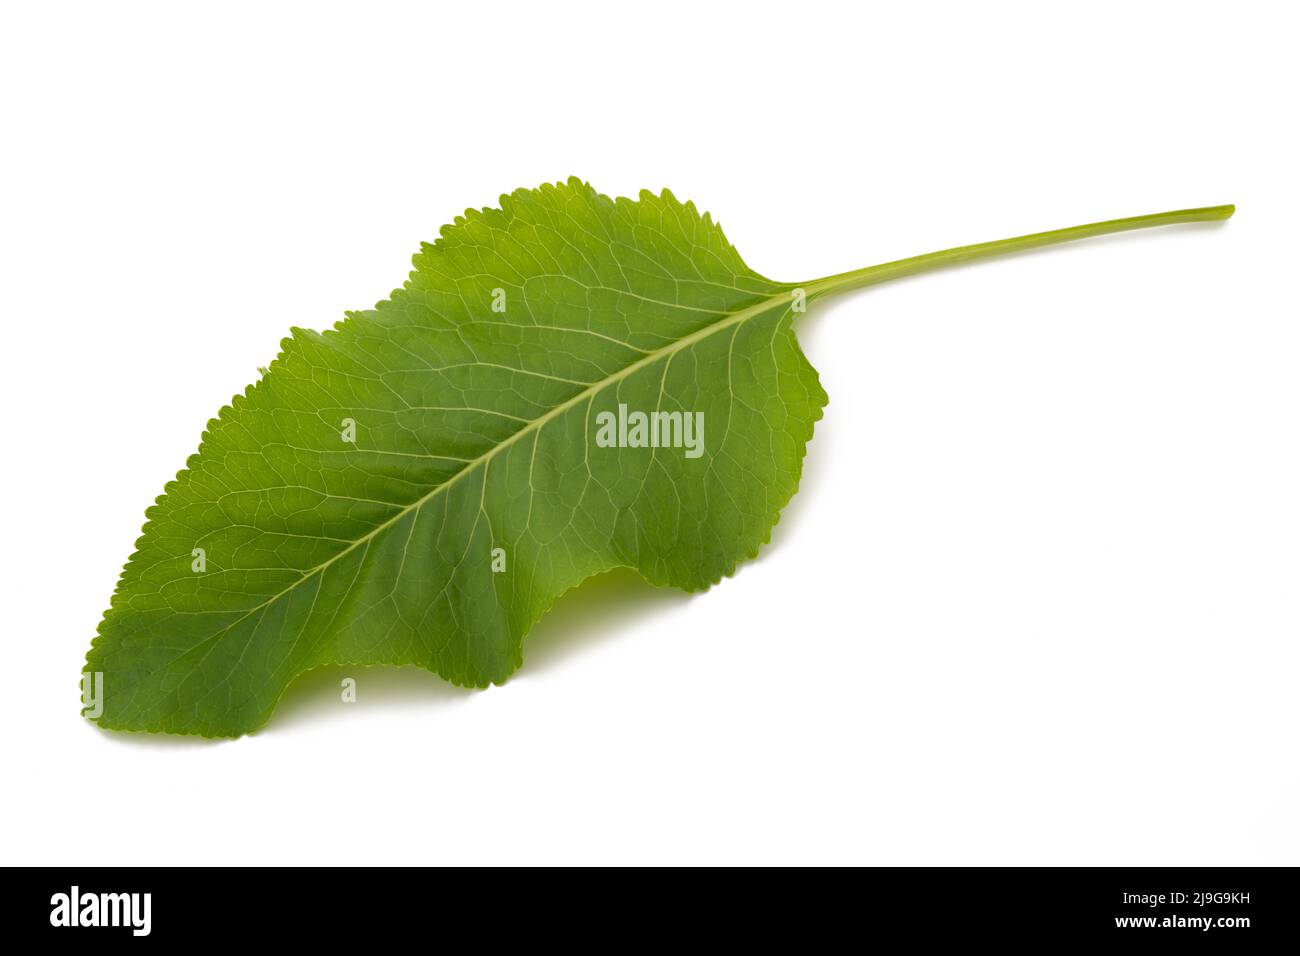 Fresh  horseradish leaf isolated on white background Stock Photo